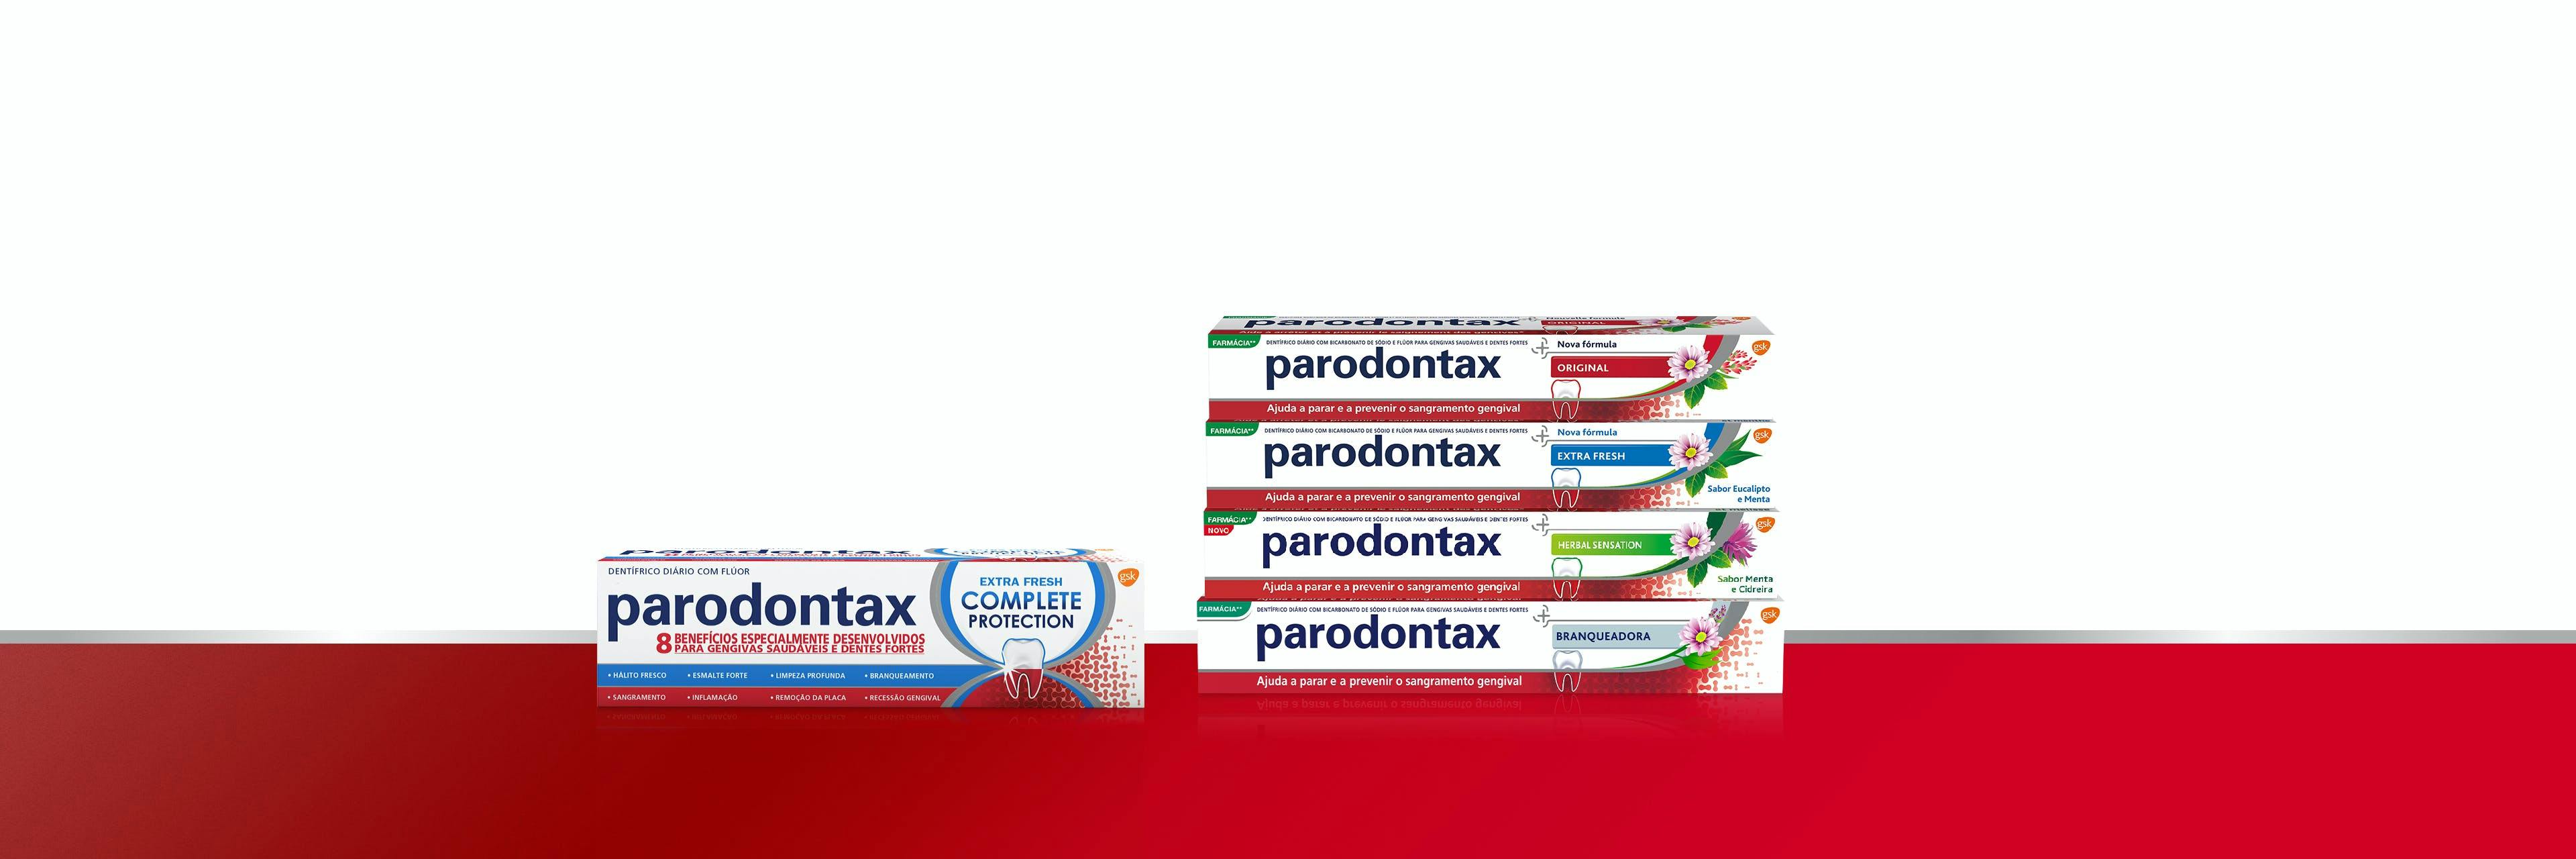 Pasta de dentes parodontax Extra Fresh